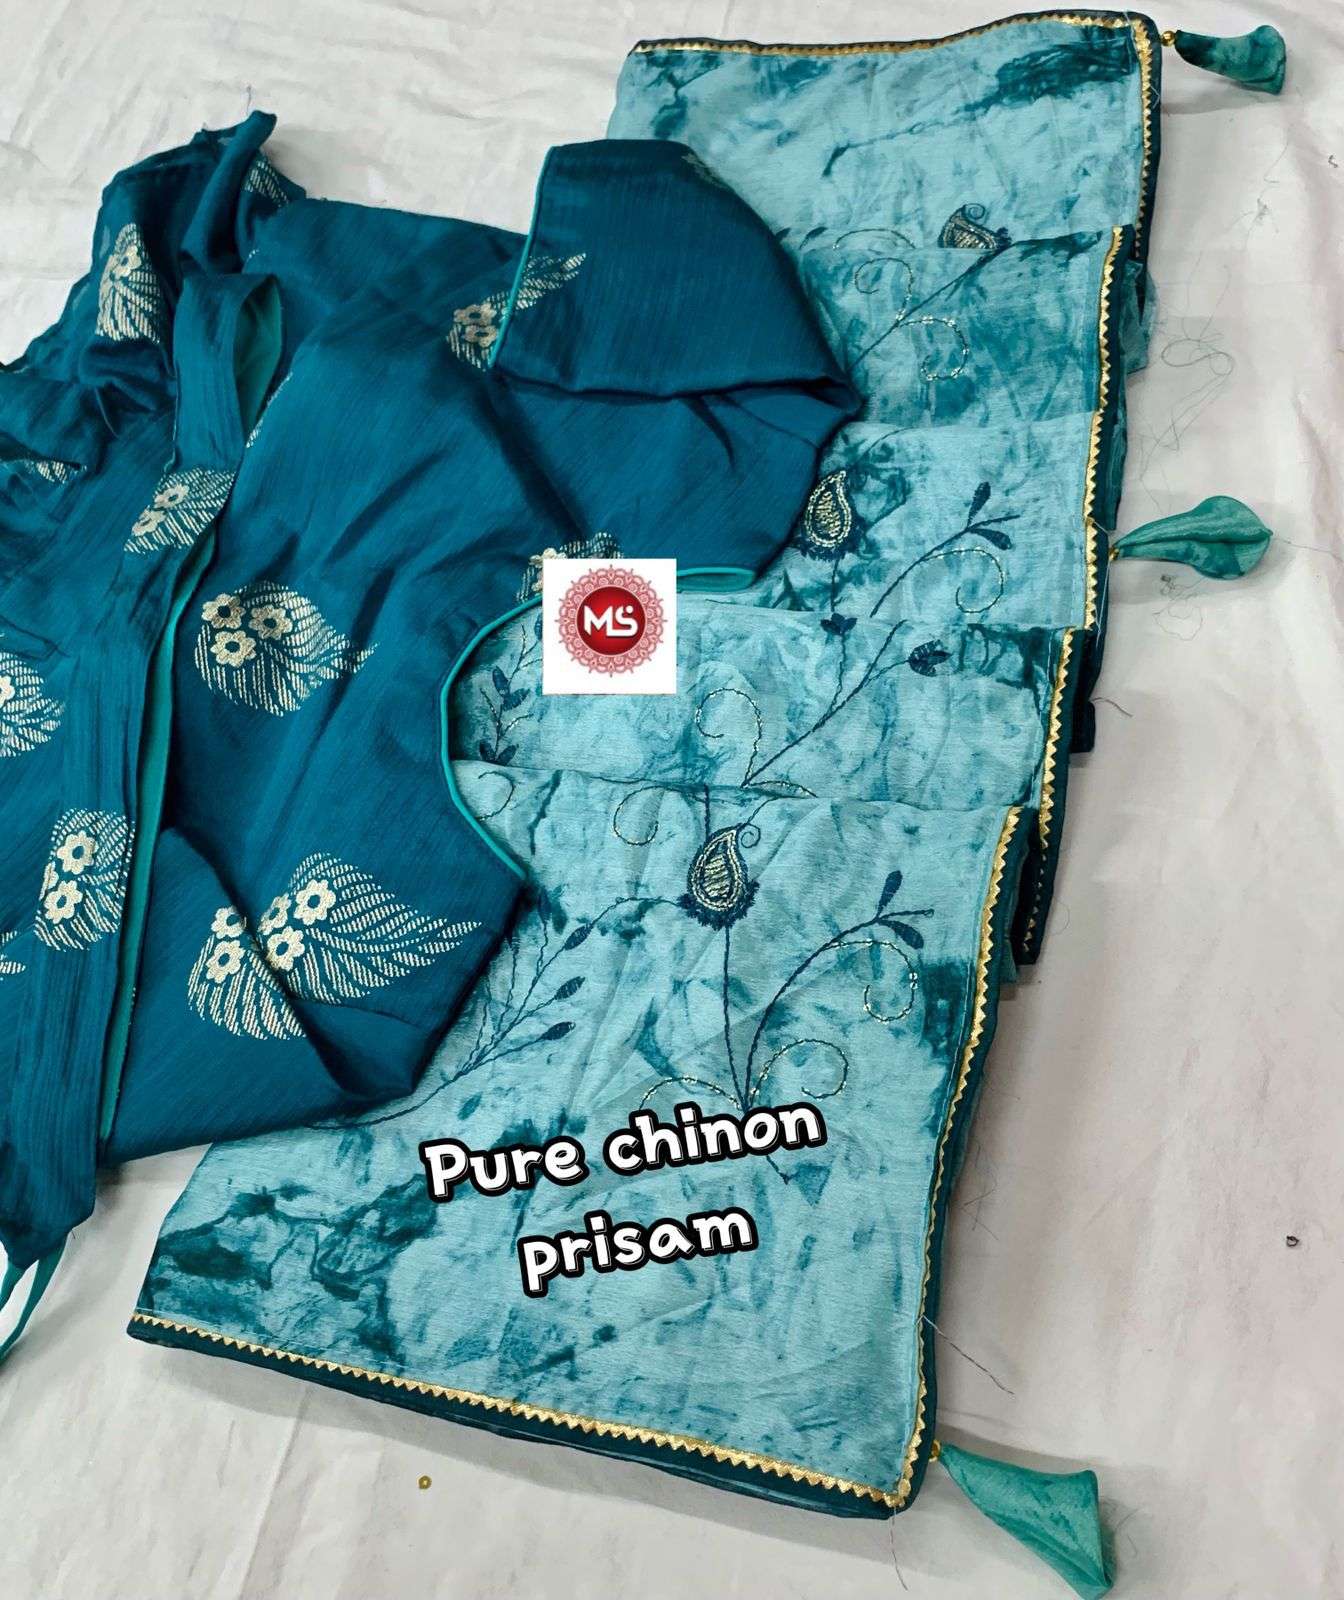 Ms brand designer pure soft chinon silk saree